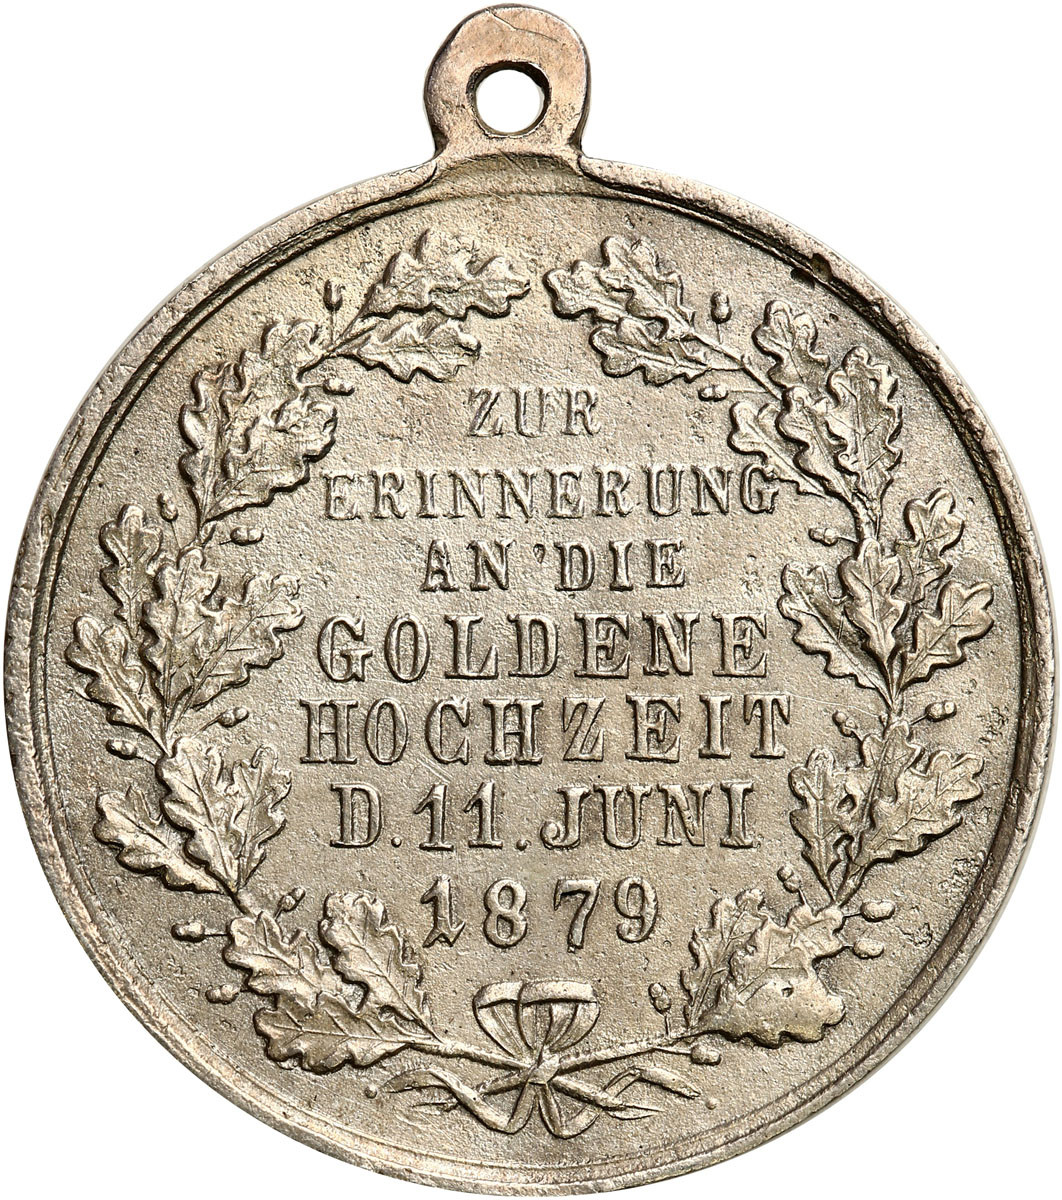 Niemcy. Wilhelm I, medal, 1879, złote gody